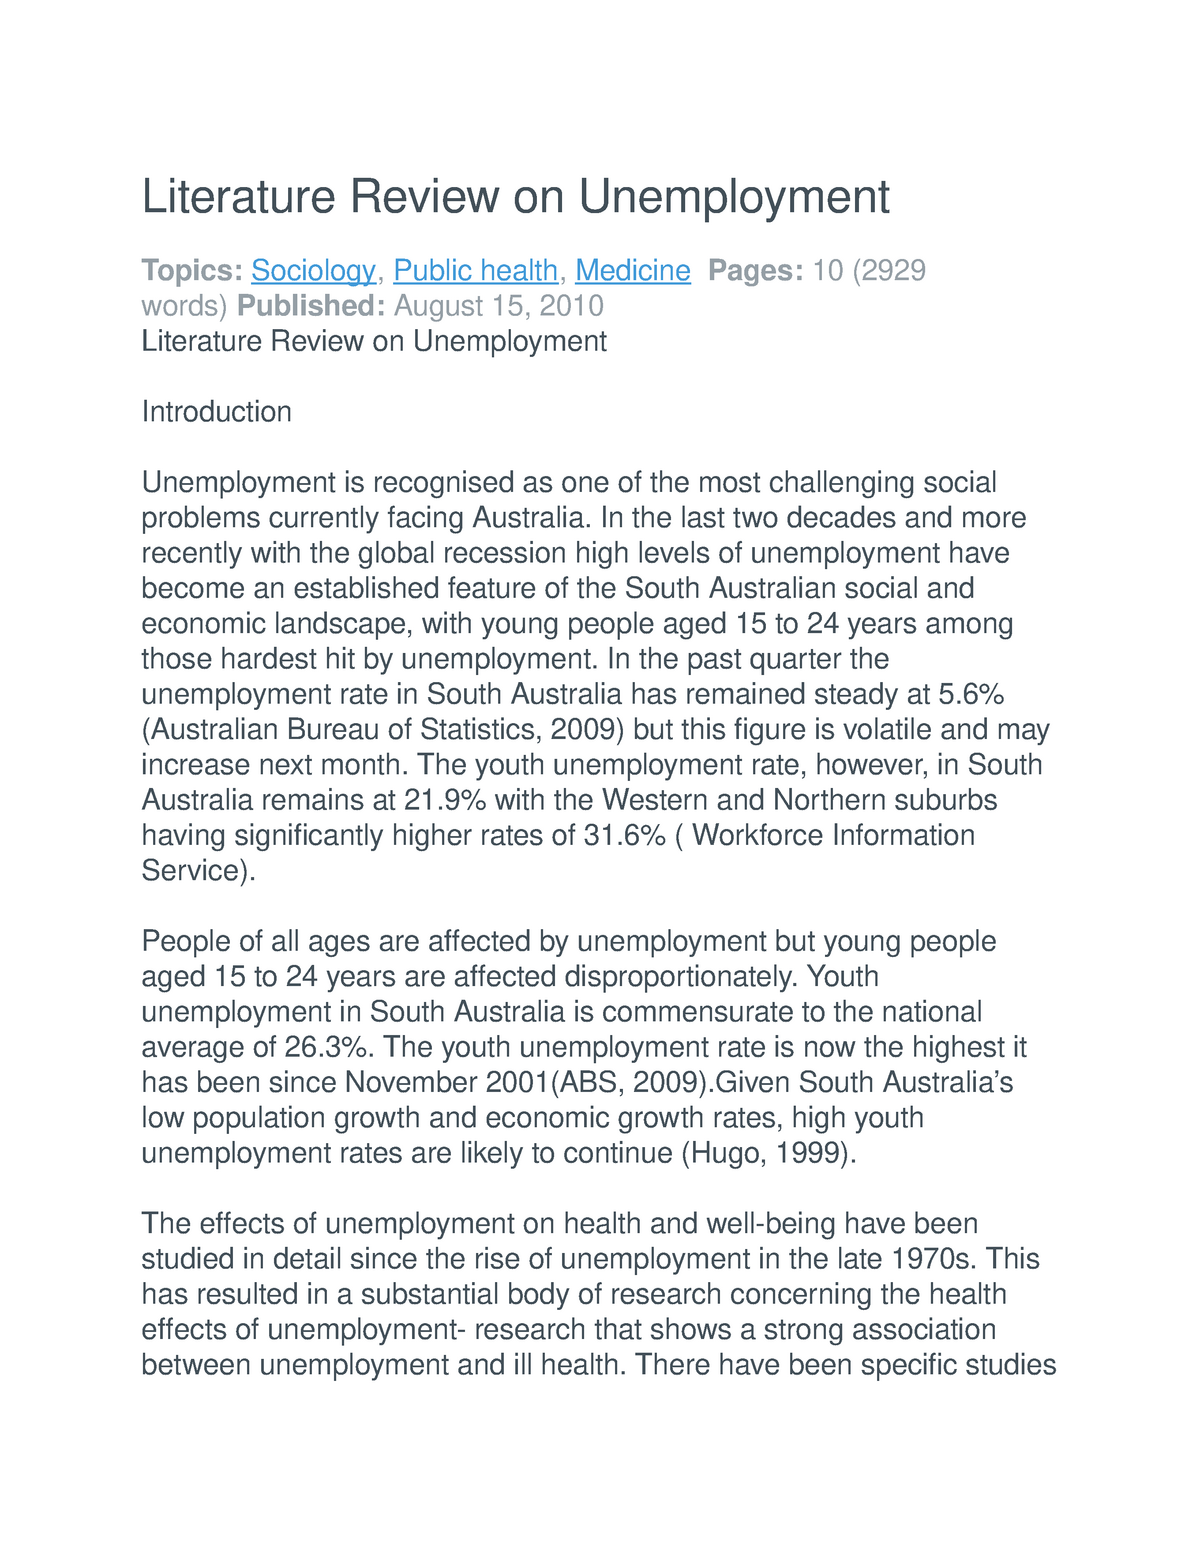 literature review on unemployment pdf